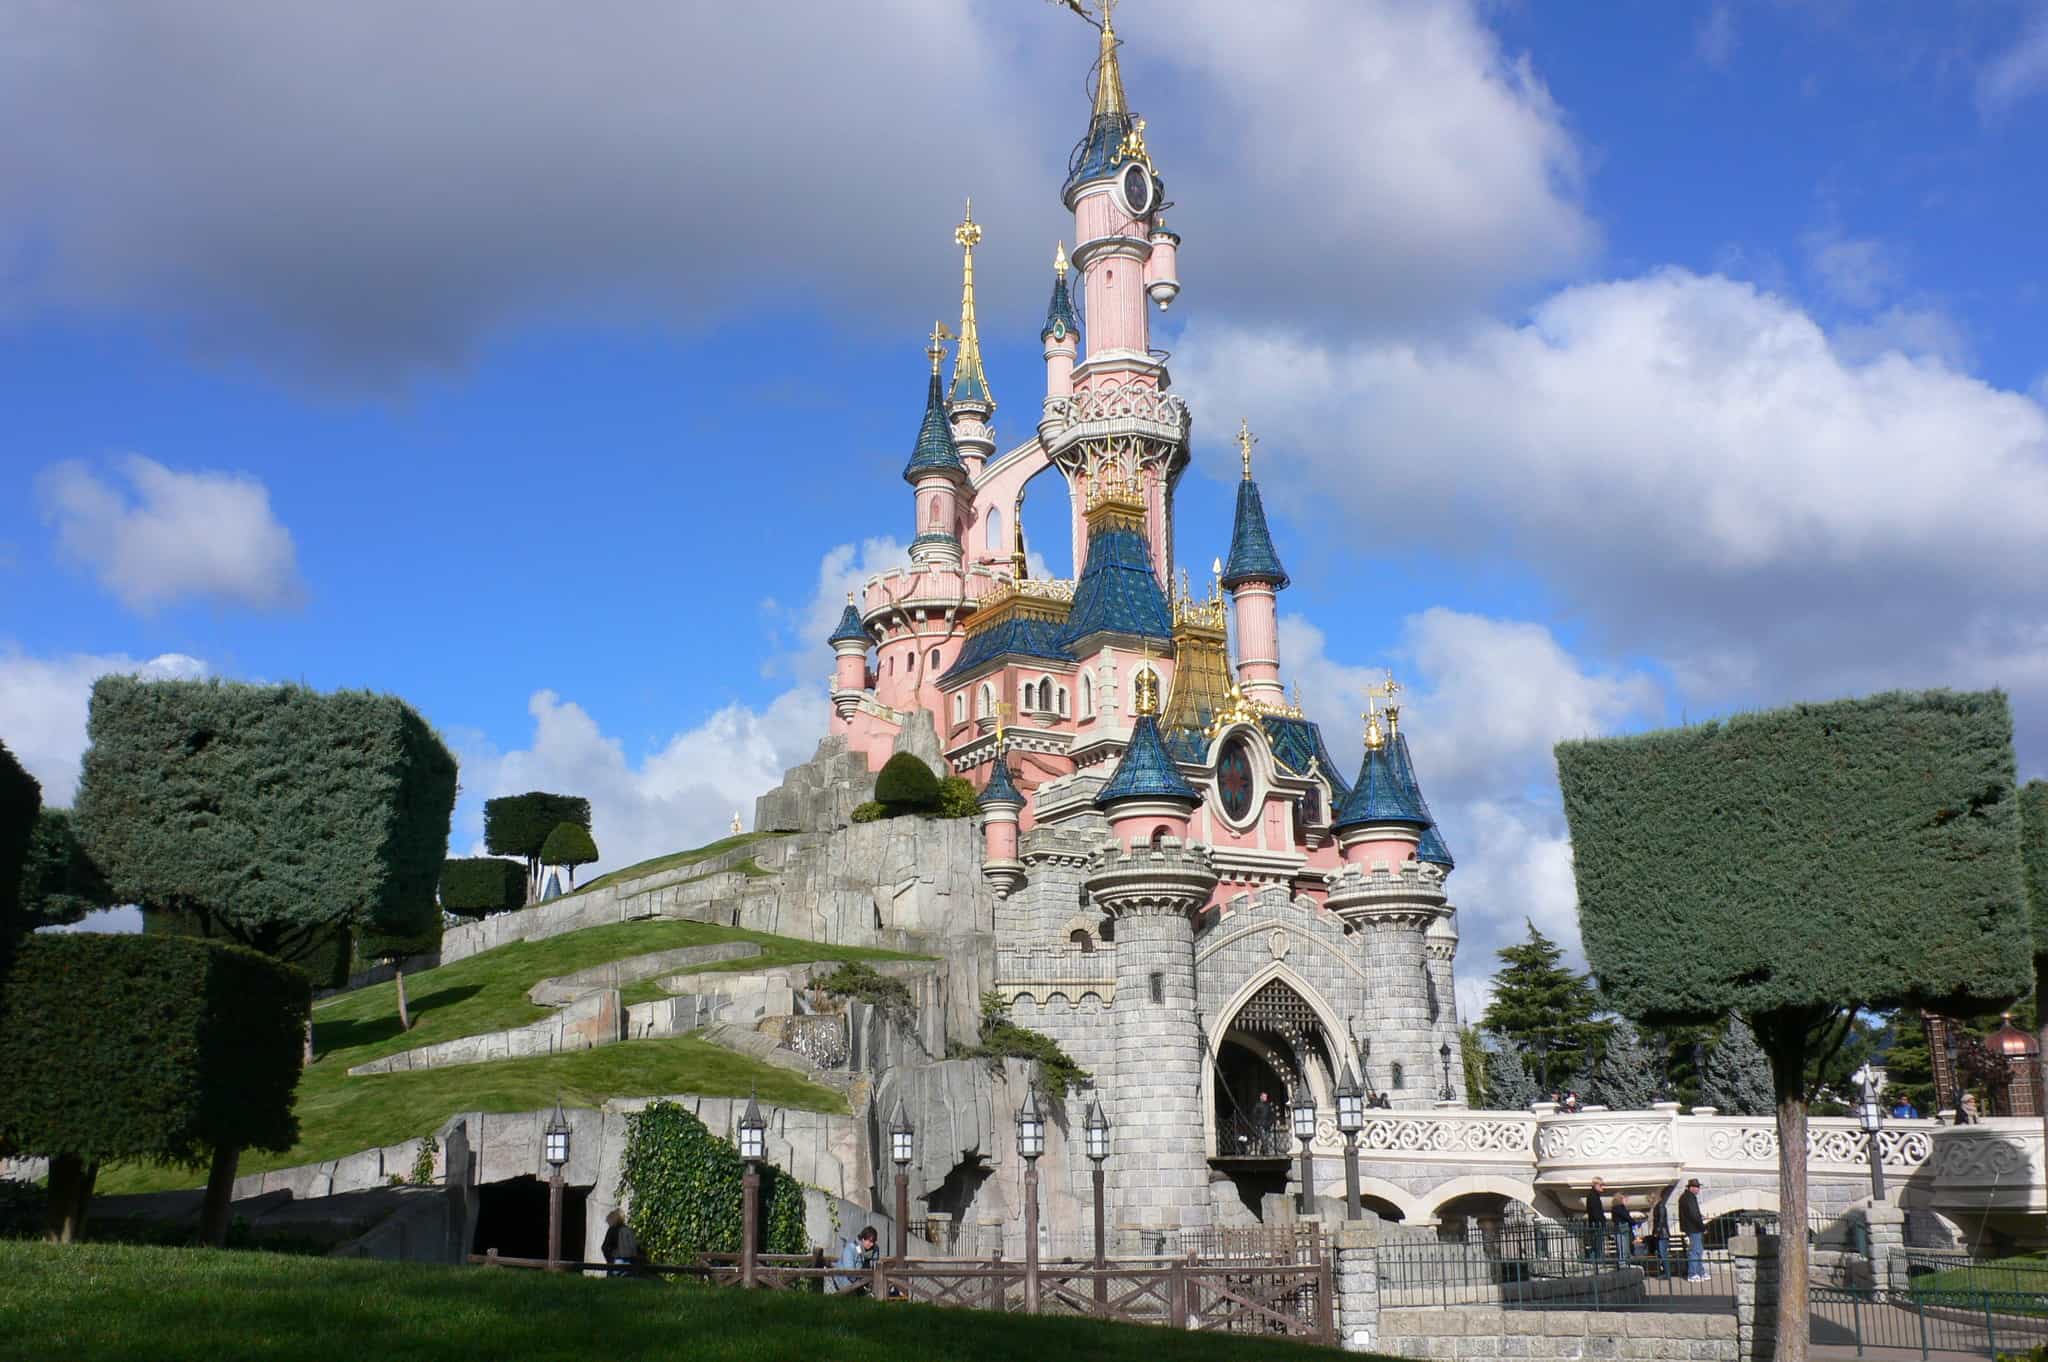 Disneyland Paris Announces Price Increase